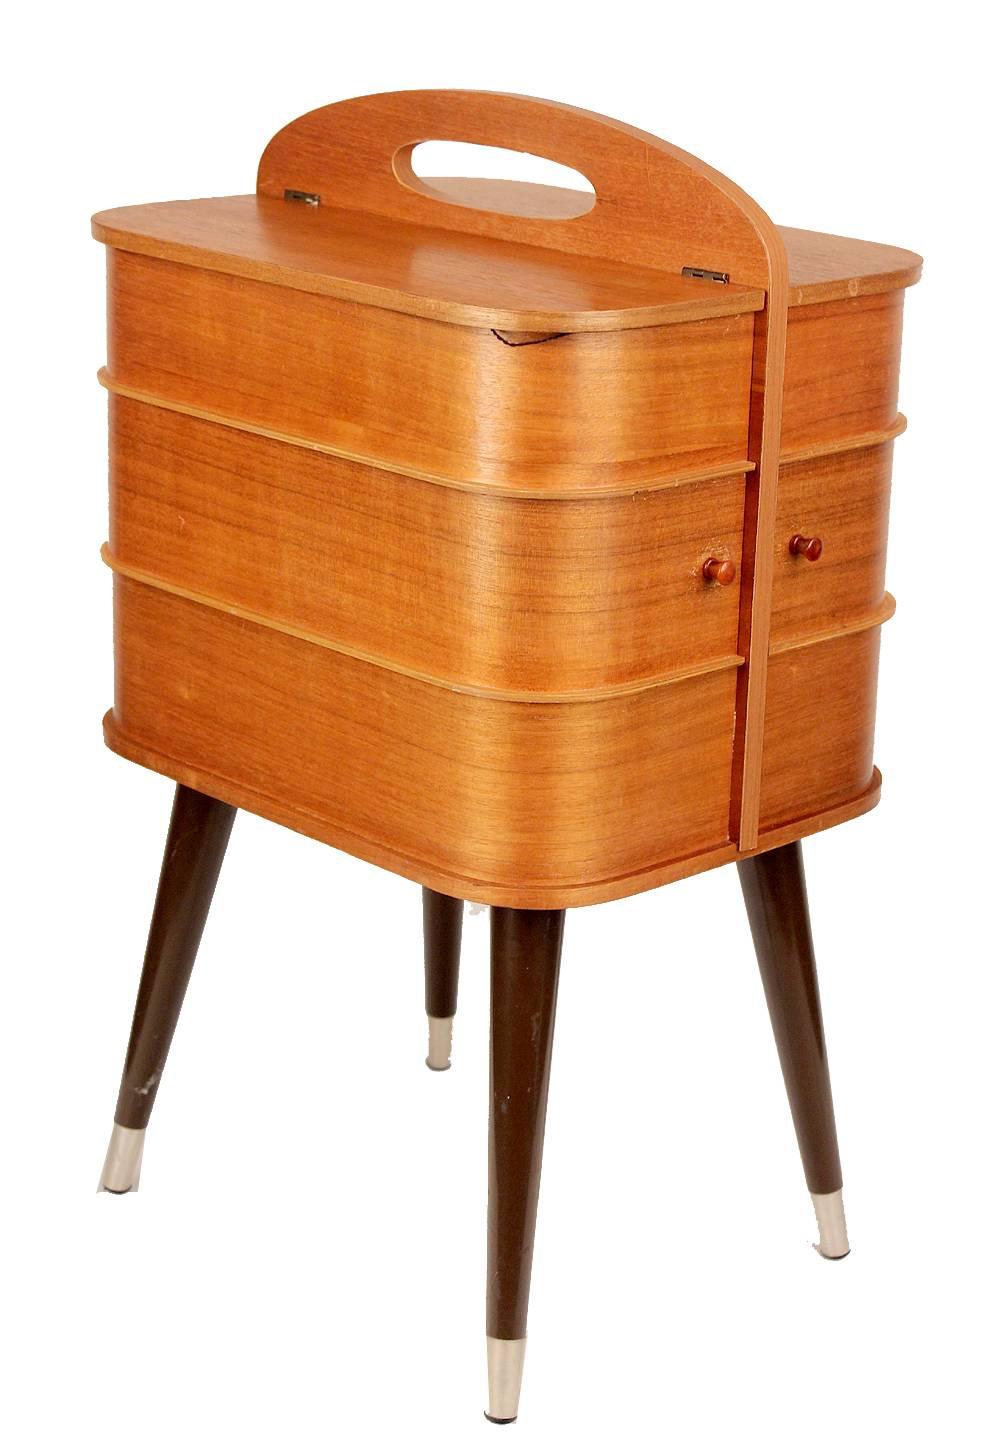 Mid-Century Modern Danish Modern Sewing Box Storage Chest Plywood, 1960s Modernist Design Vintage